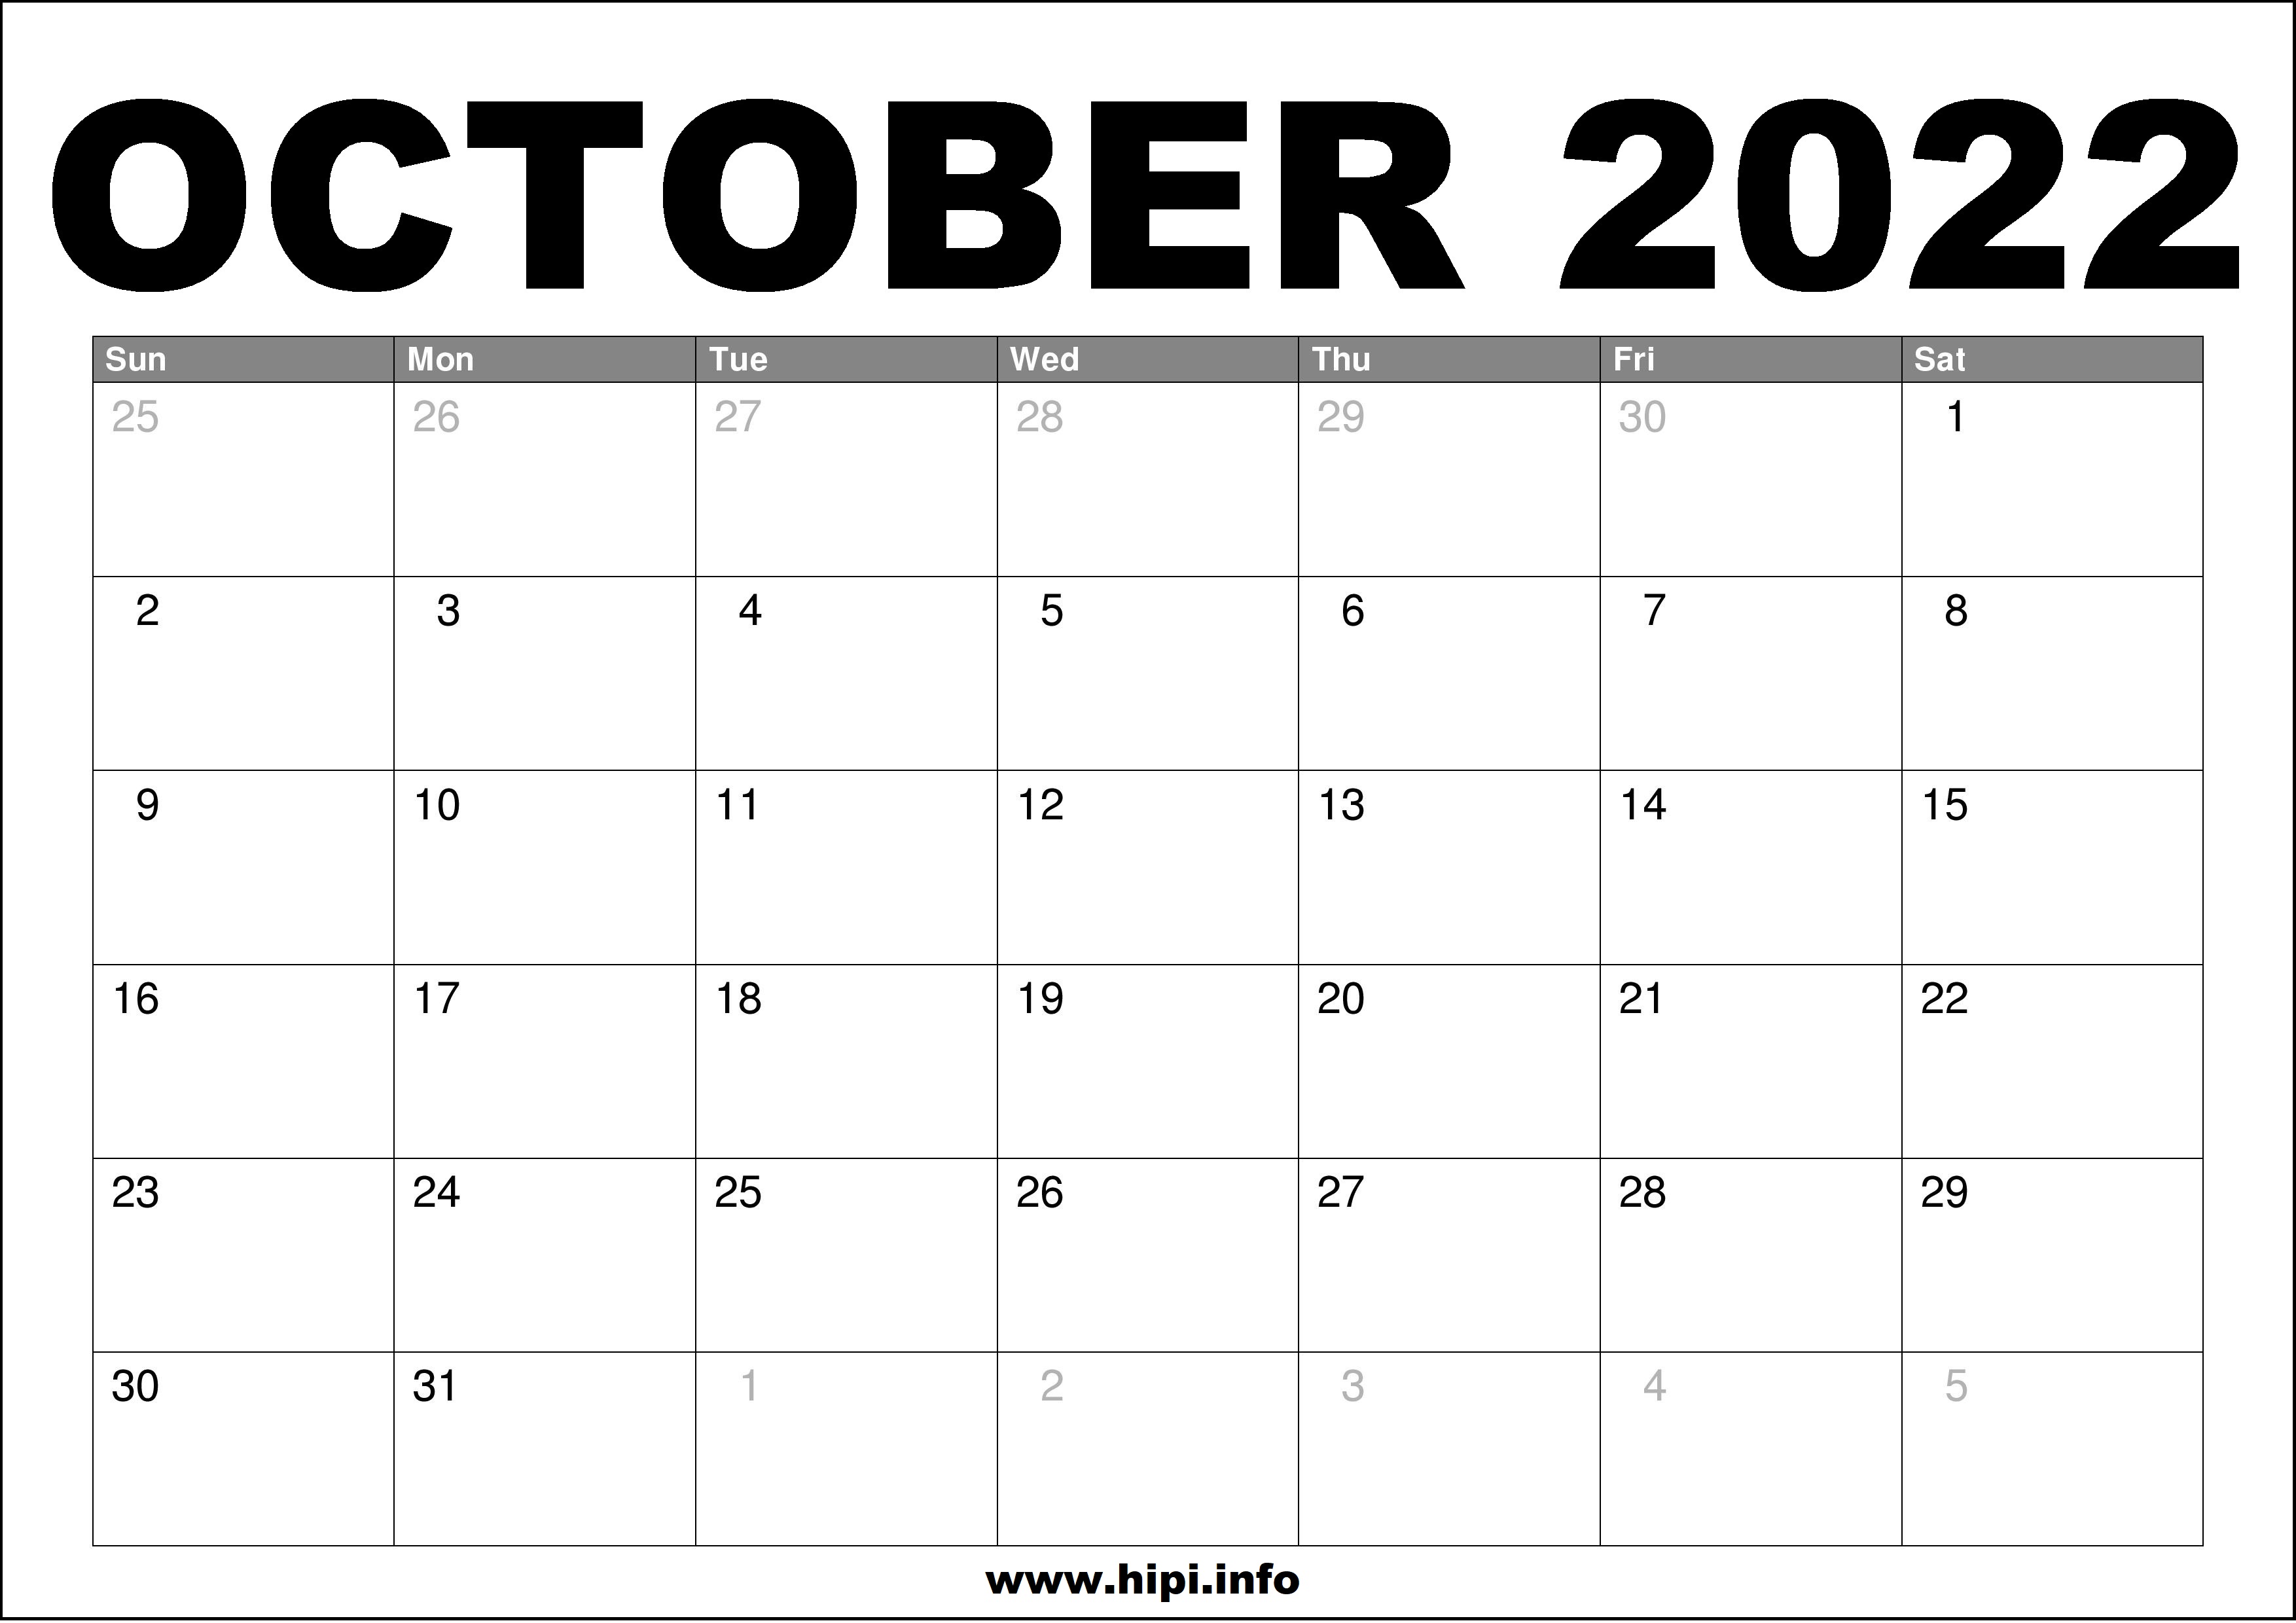 October 2022 Monthly Calendar October 2022 Calendar Printable Free - Hipi.info | Calendars Printable Free